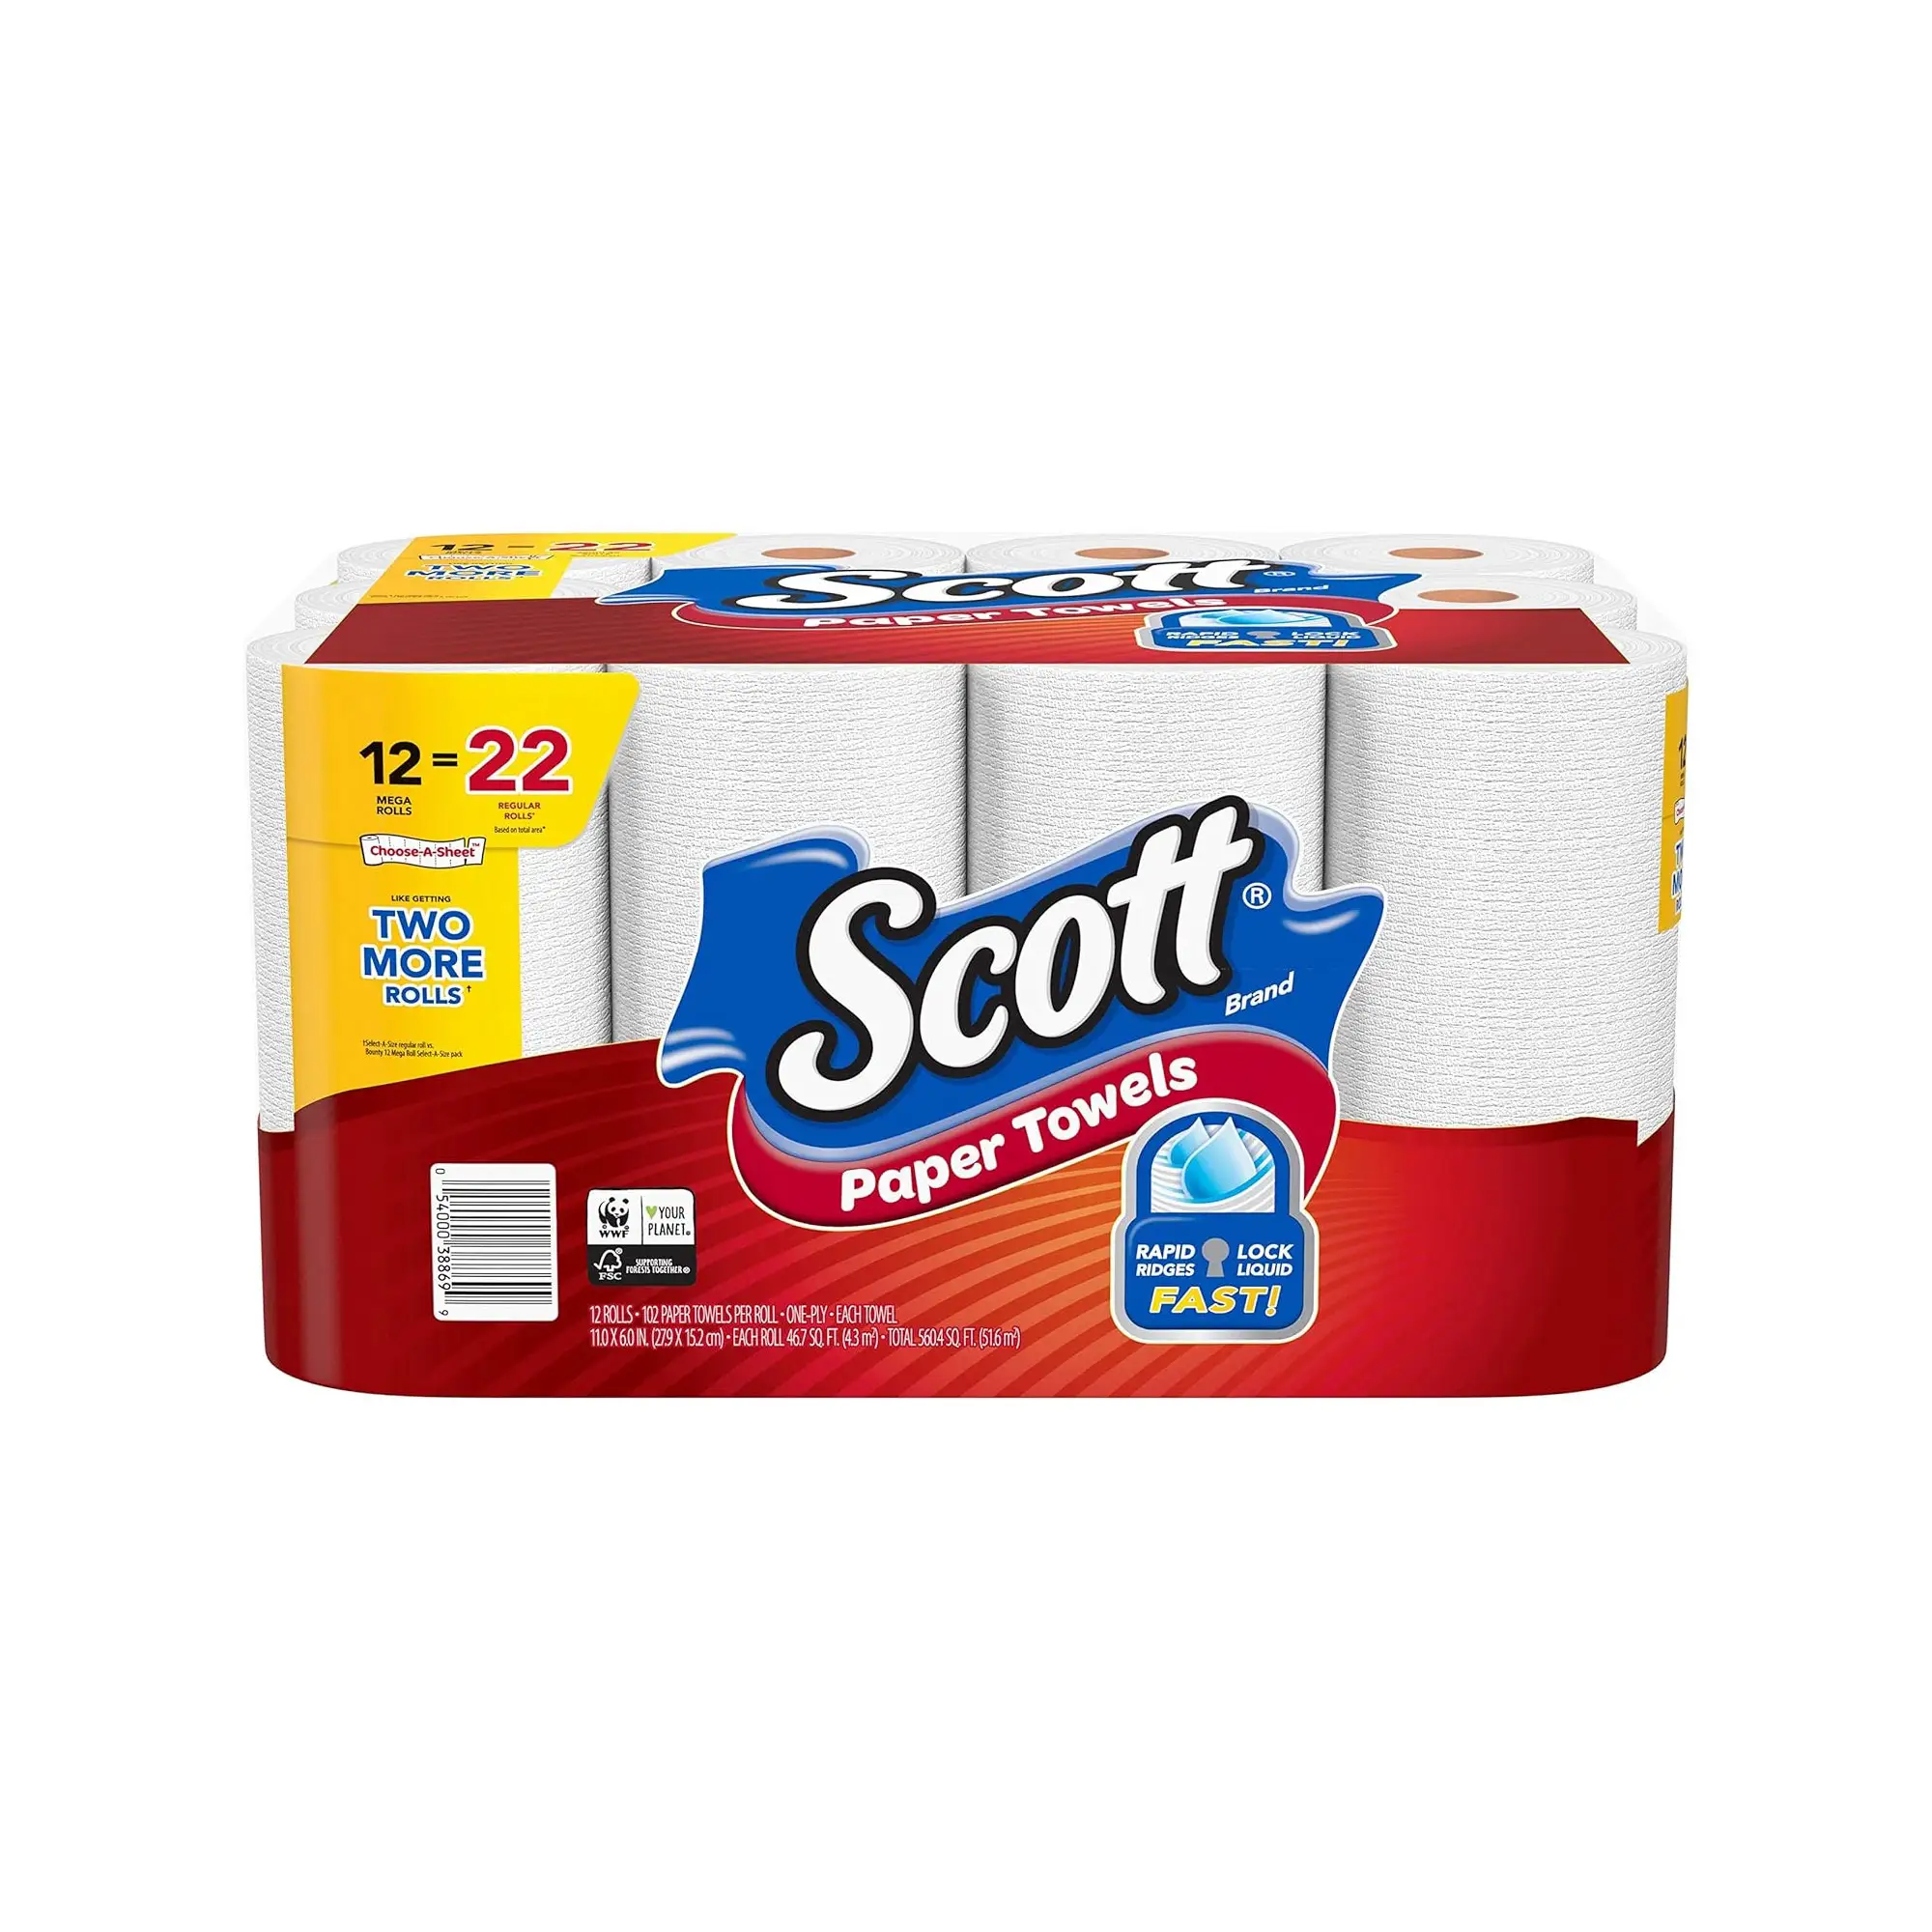 Scott Choose-A-Sheet White Paper Handtücher-Premium-Qualität, 12 Doppelrollen Rapid Ridges Clean Up Messes Fast